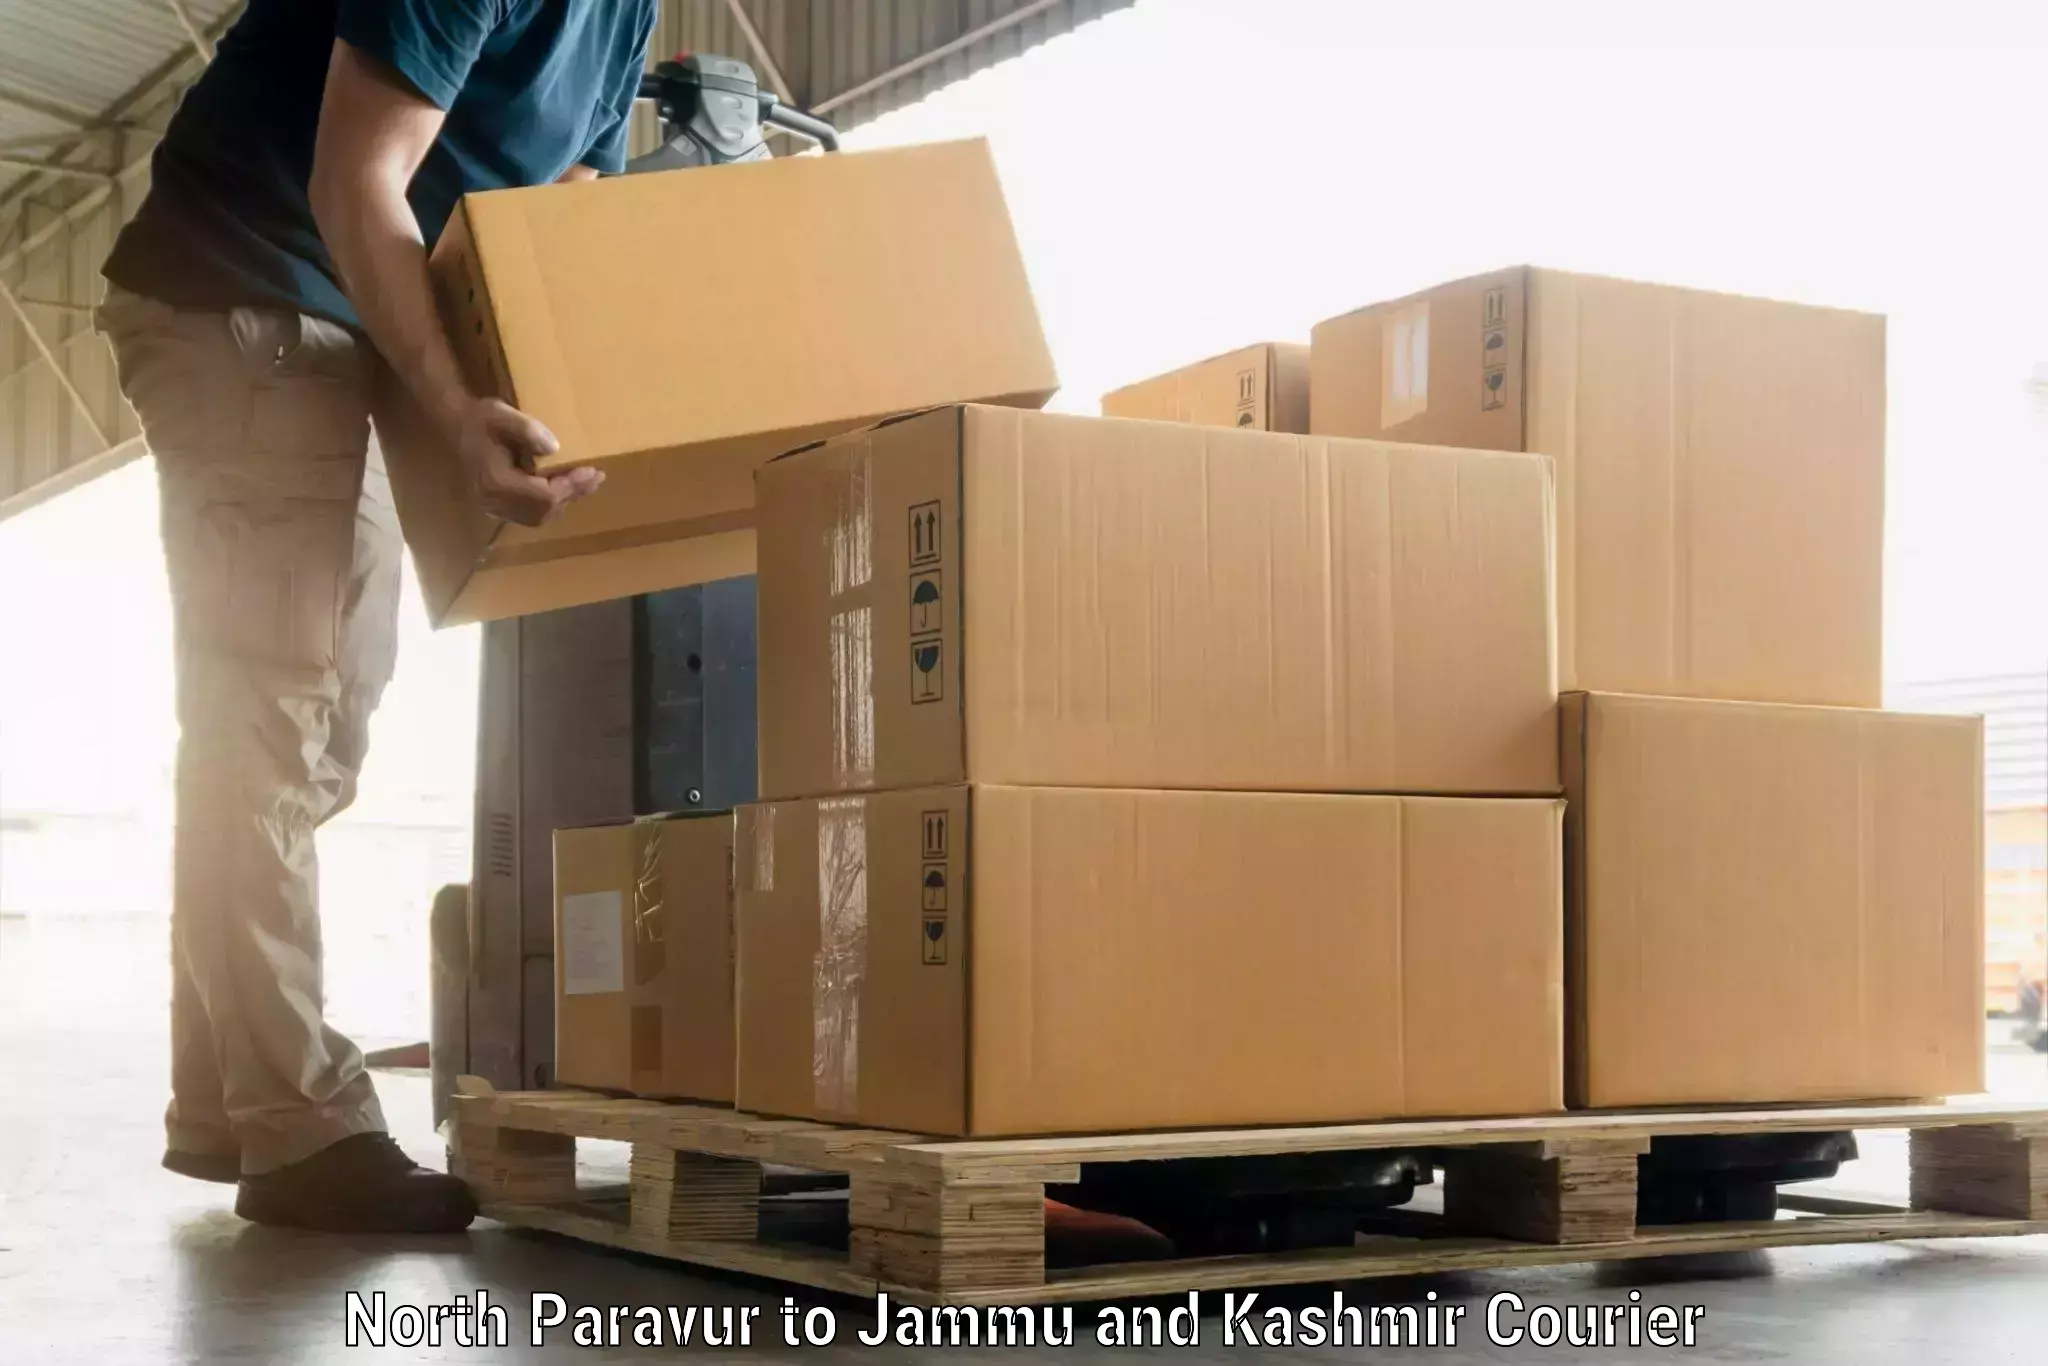 Doorstep luggage pickup in North Paravur to Kargil